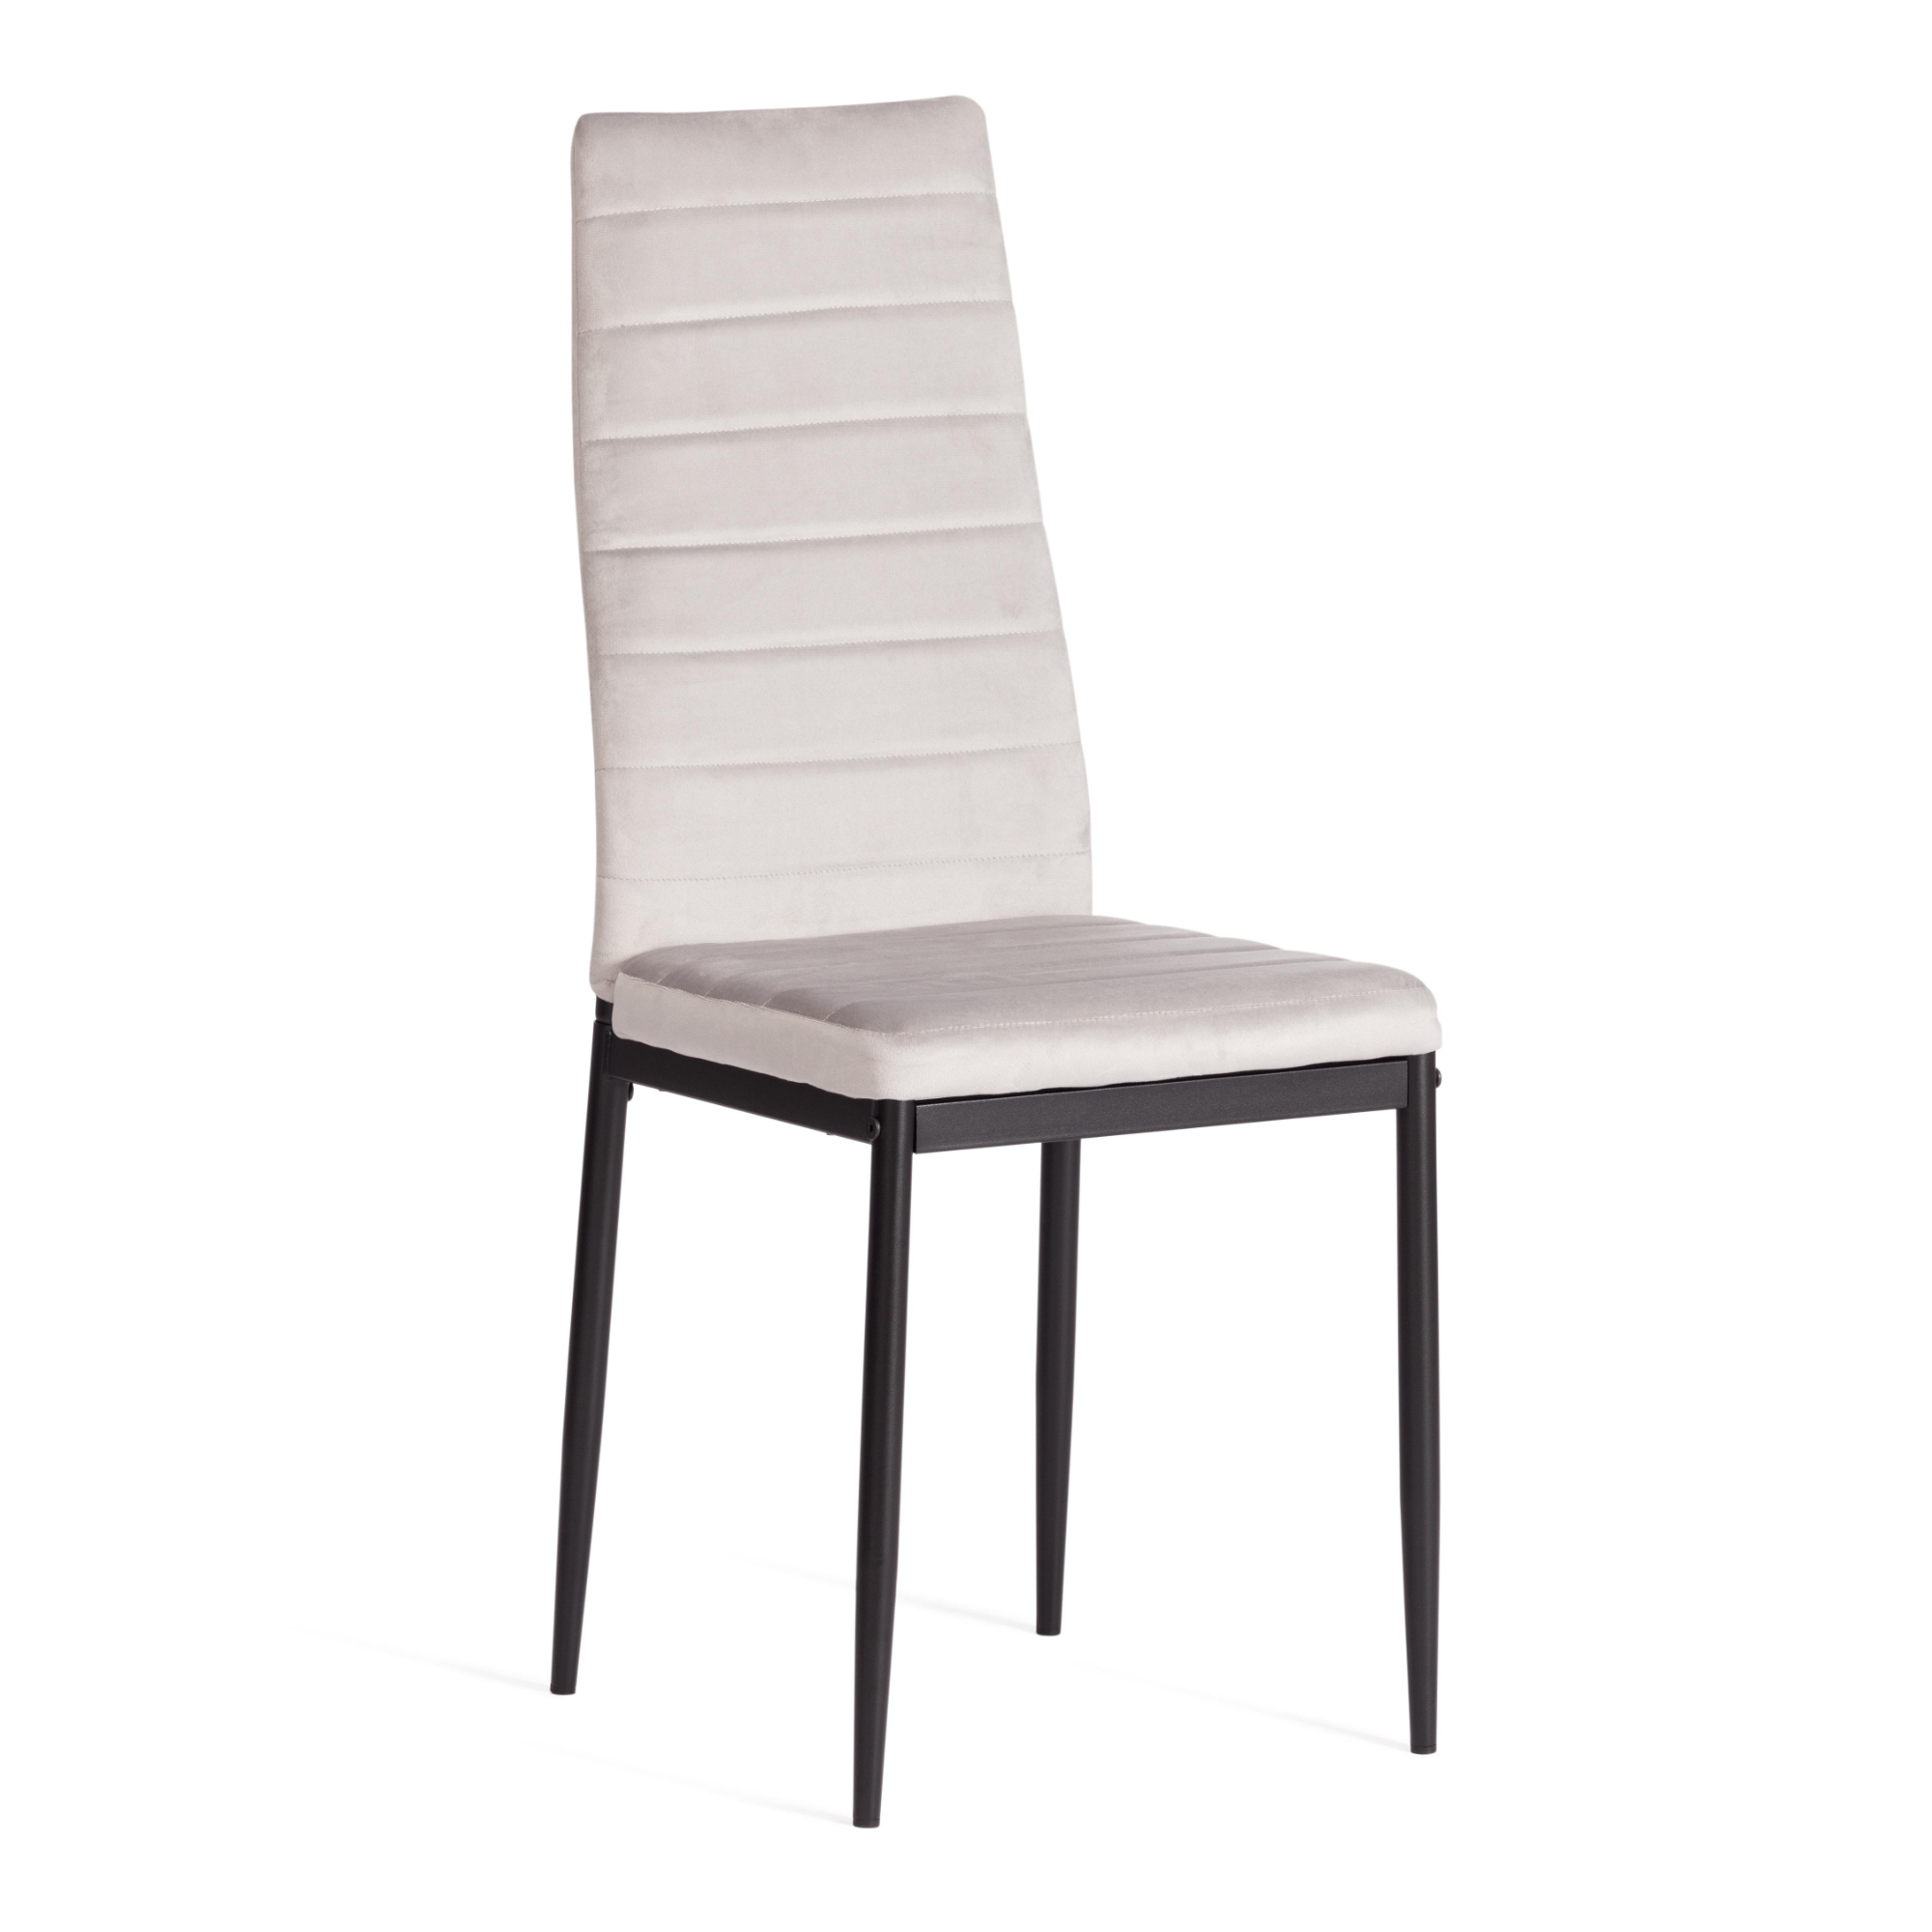 стул пластиковый усиленный стекловолокном для дома и спальни кабинета гостиной комбинированный стол и стул маленький низкий стул для ры Стул ТС Easy вельвет светло-серый с черным 49х41х98 см